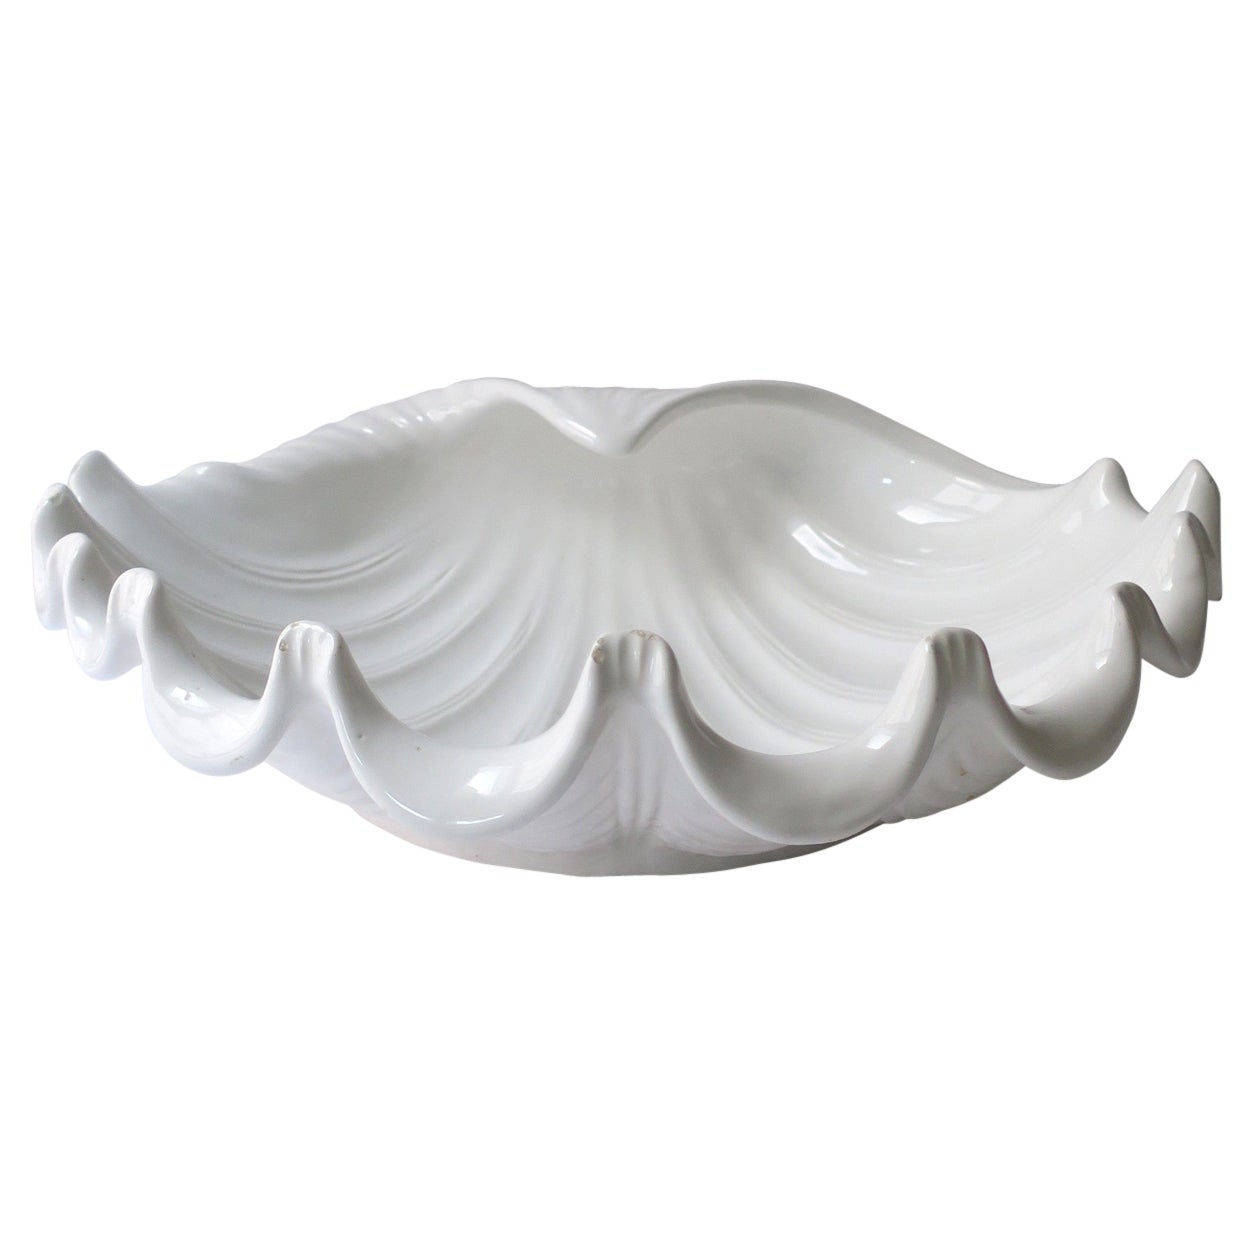 Bol de centre de table italien en céramique blanche coquillage Clam Shell